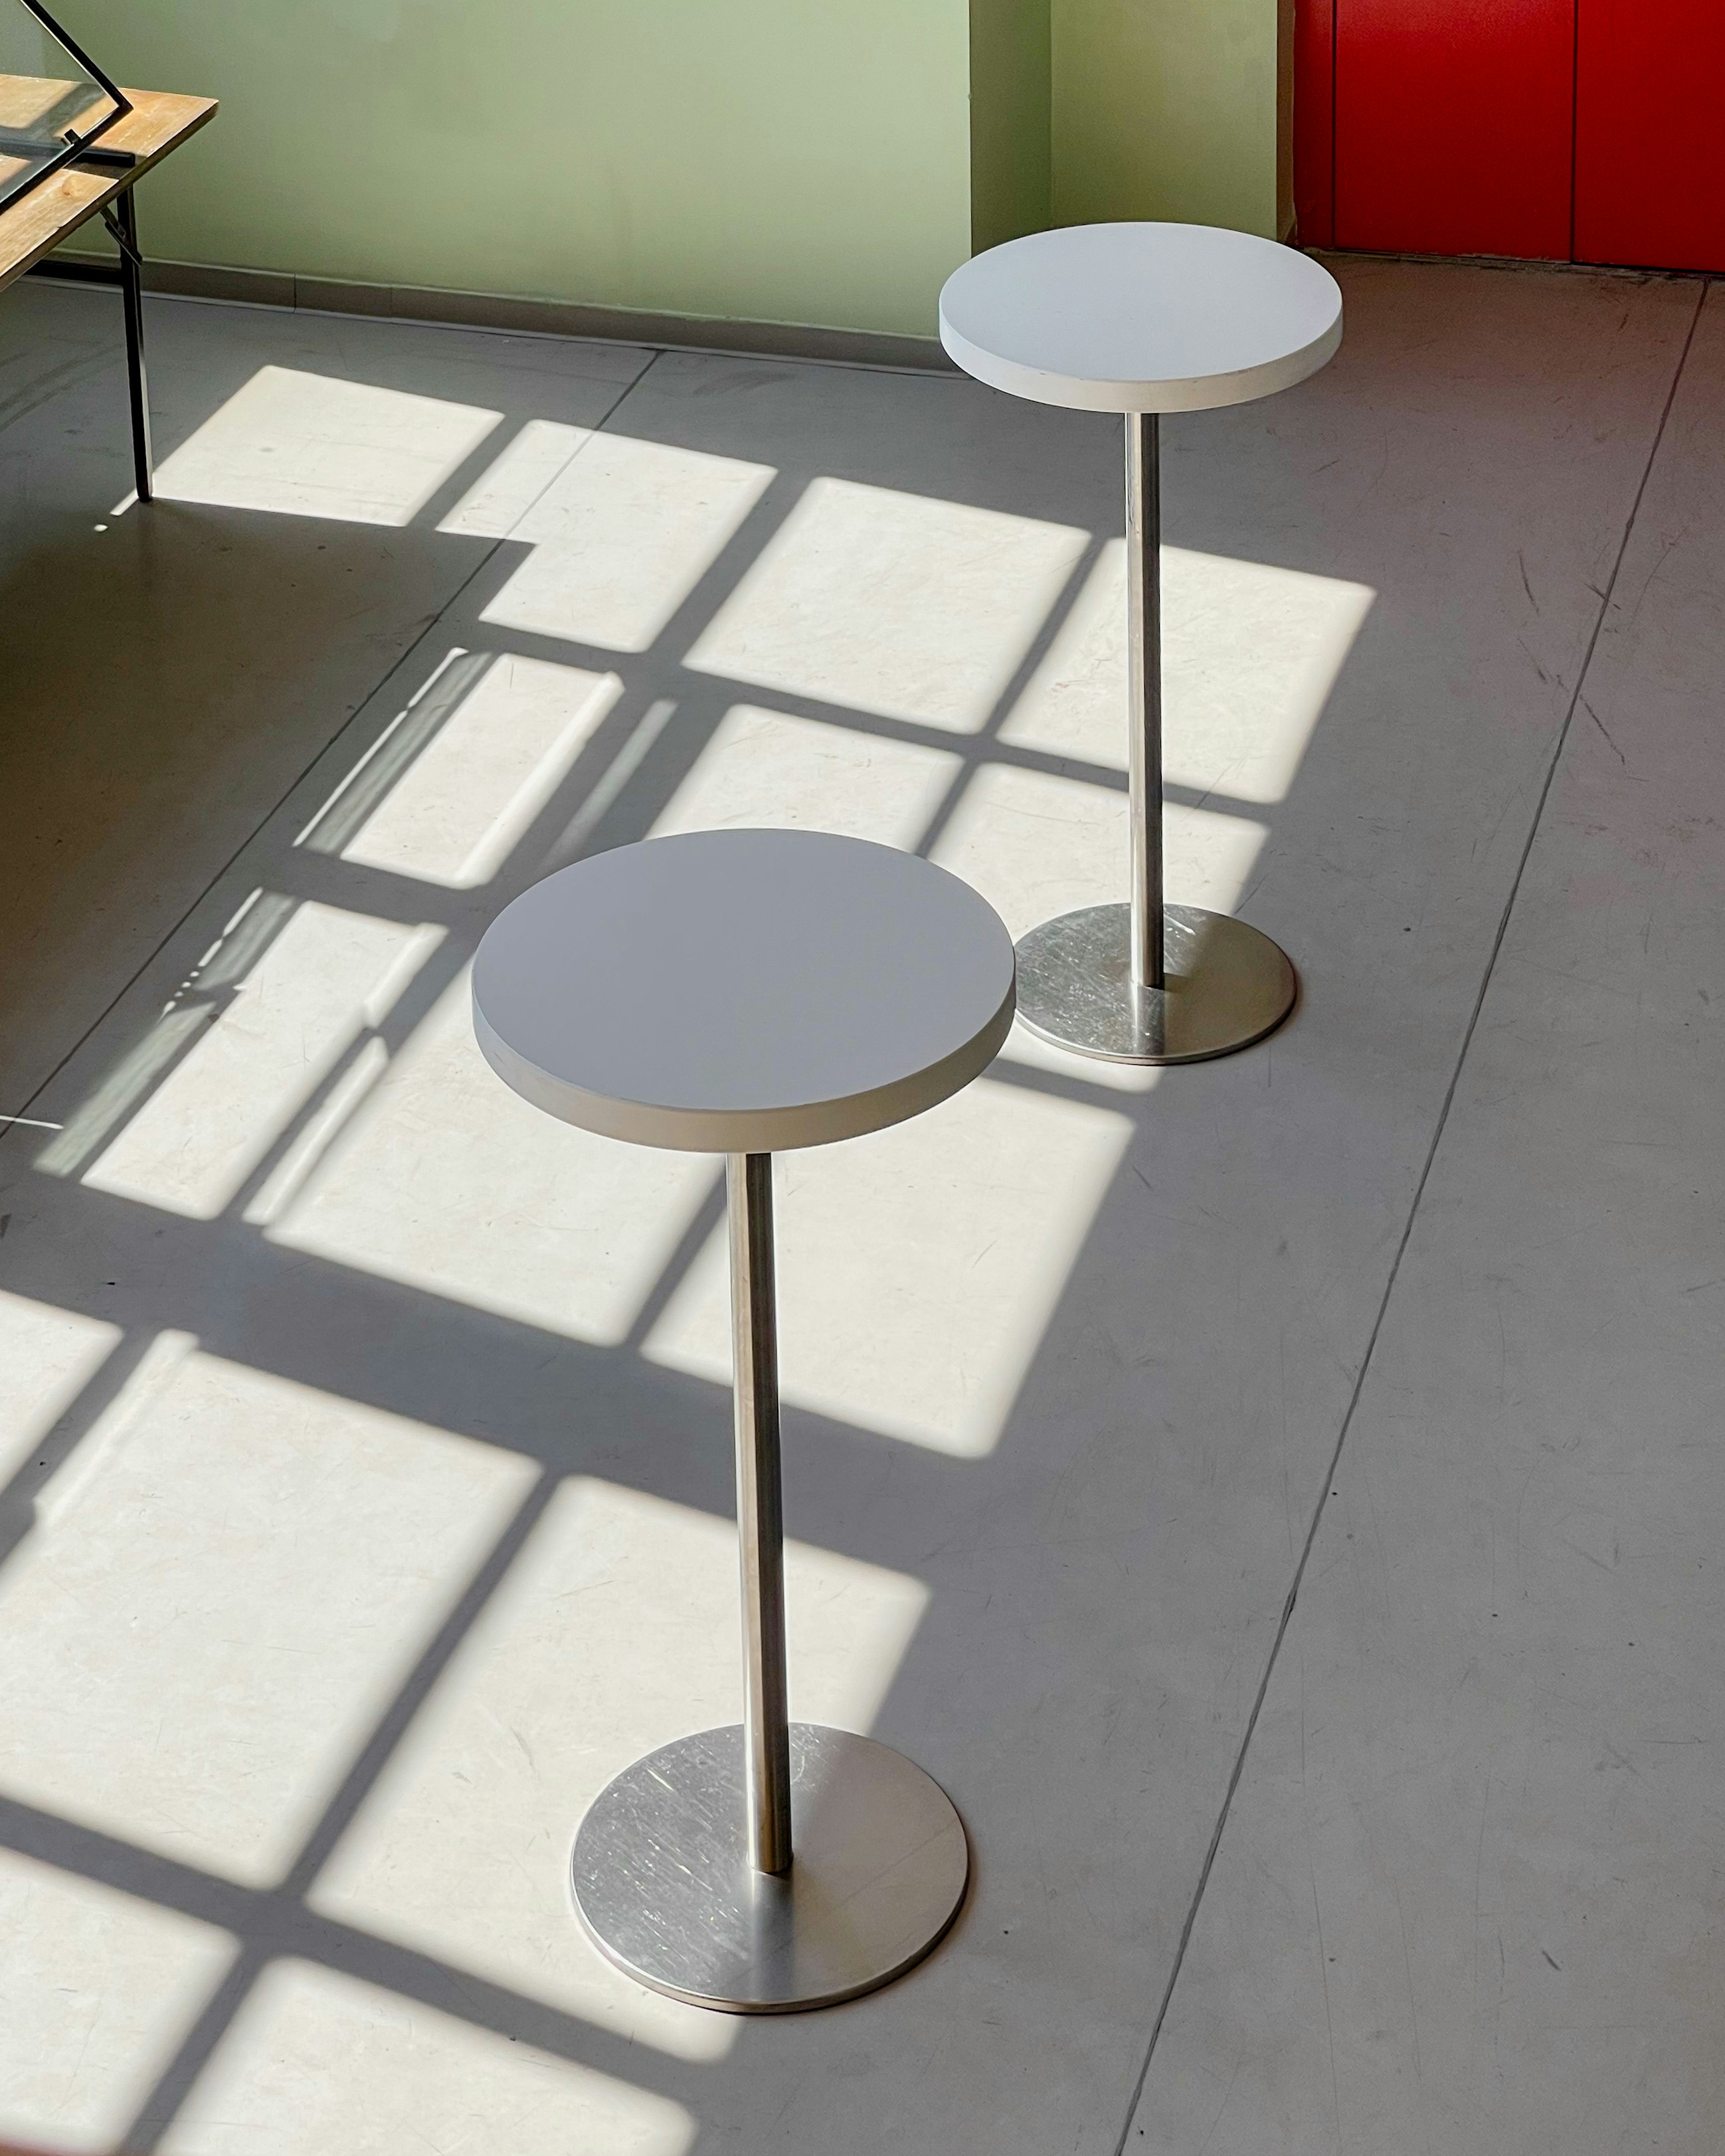 white round table on white floor tiles